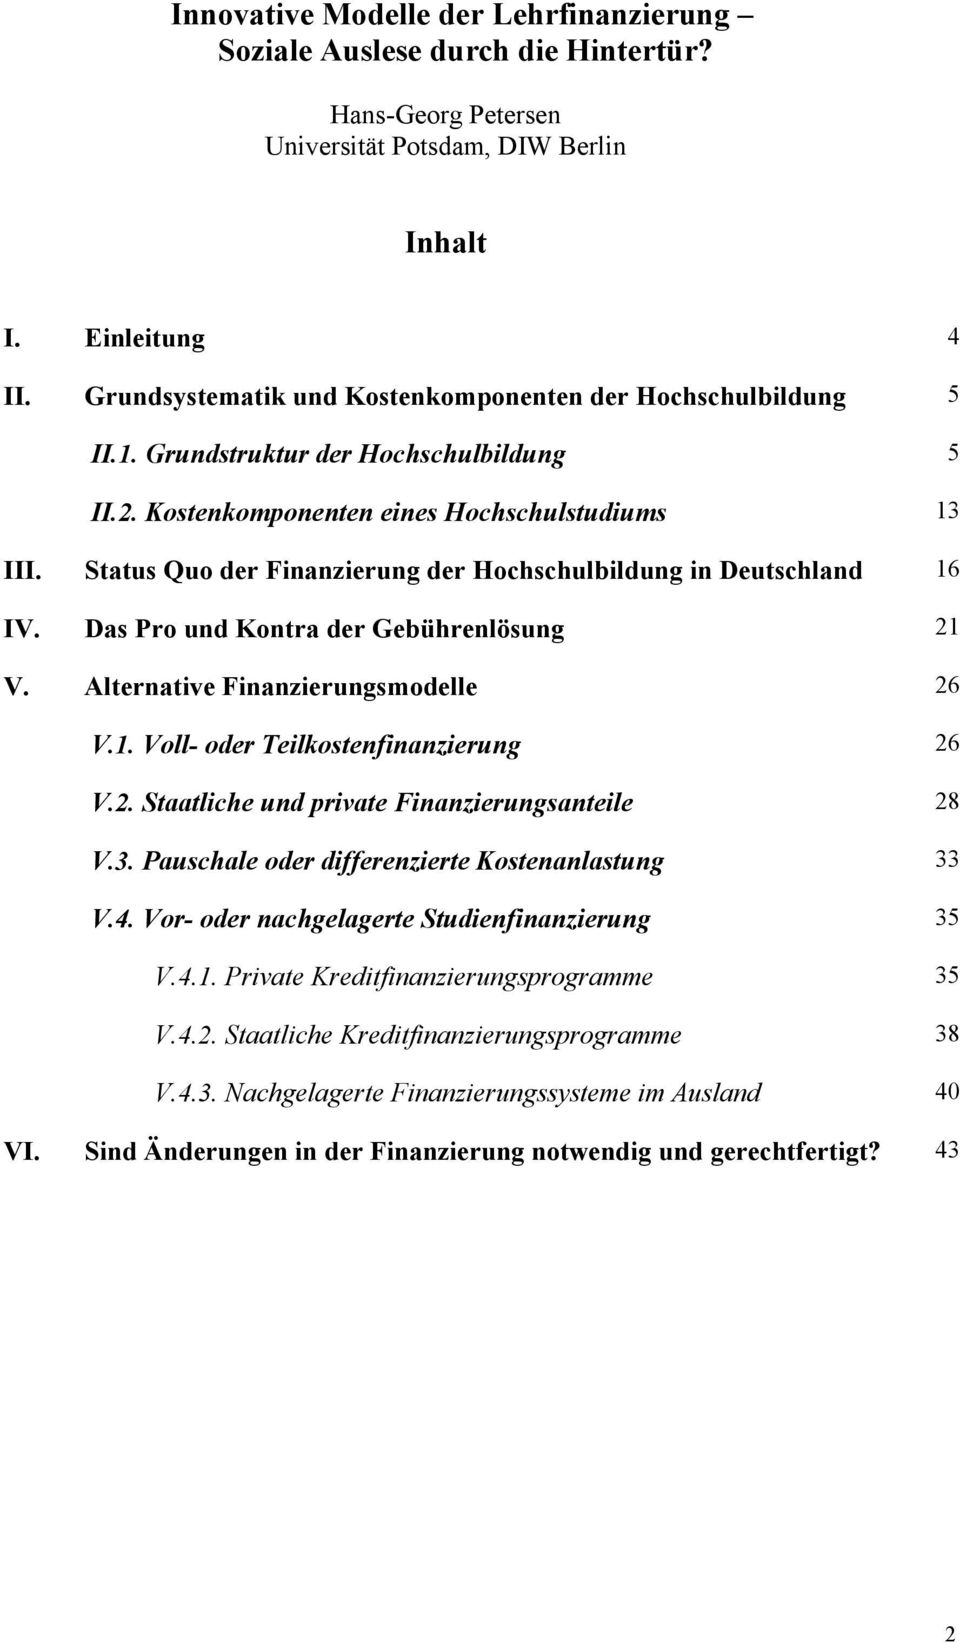 Status Quo der Finanzierung der Hochschulbildung in Deutschland 16 IV. Das Pro und Kontra der Gebührenlösung 21 V. Alternative Finanzierungsmodelle 26 V.1. Voll- oder Teilkostenfinanzierung 26 V.2. Staatliche und private Finanzierungsanteile 28 V.